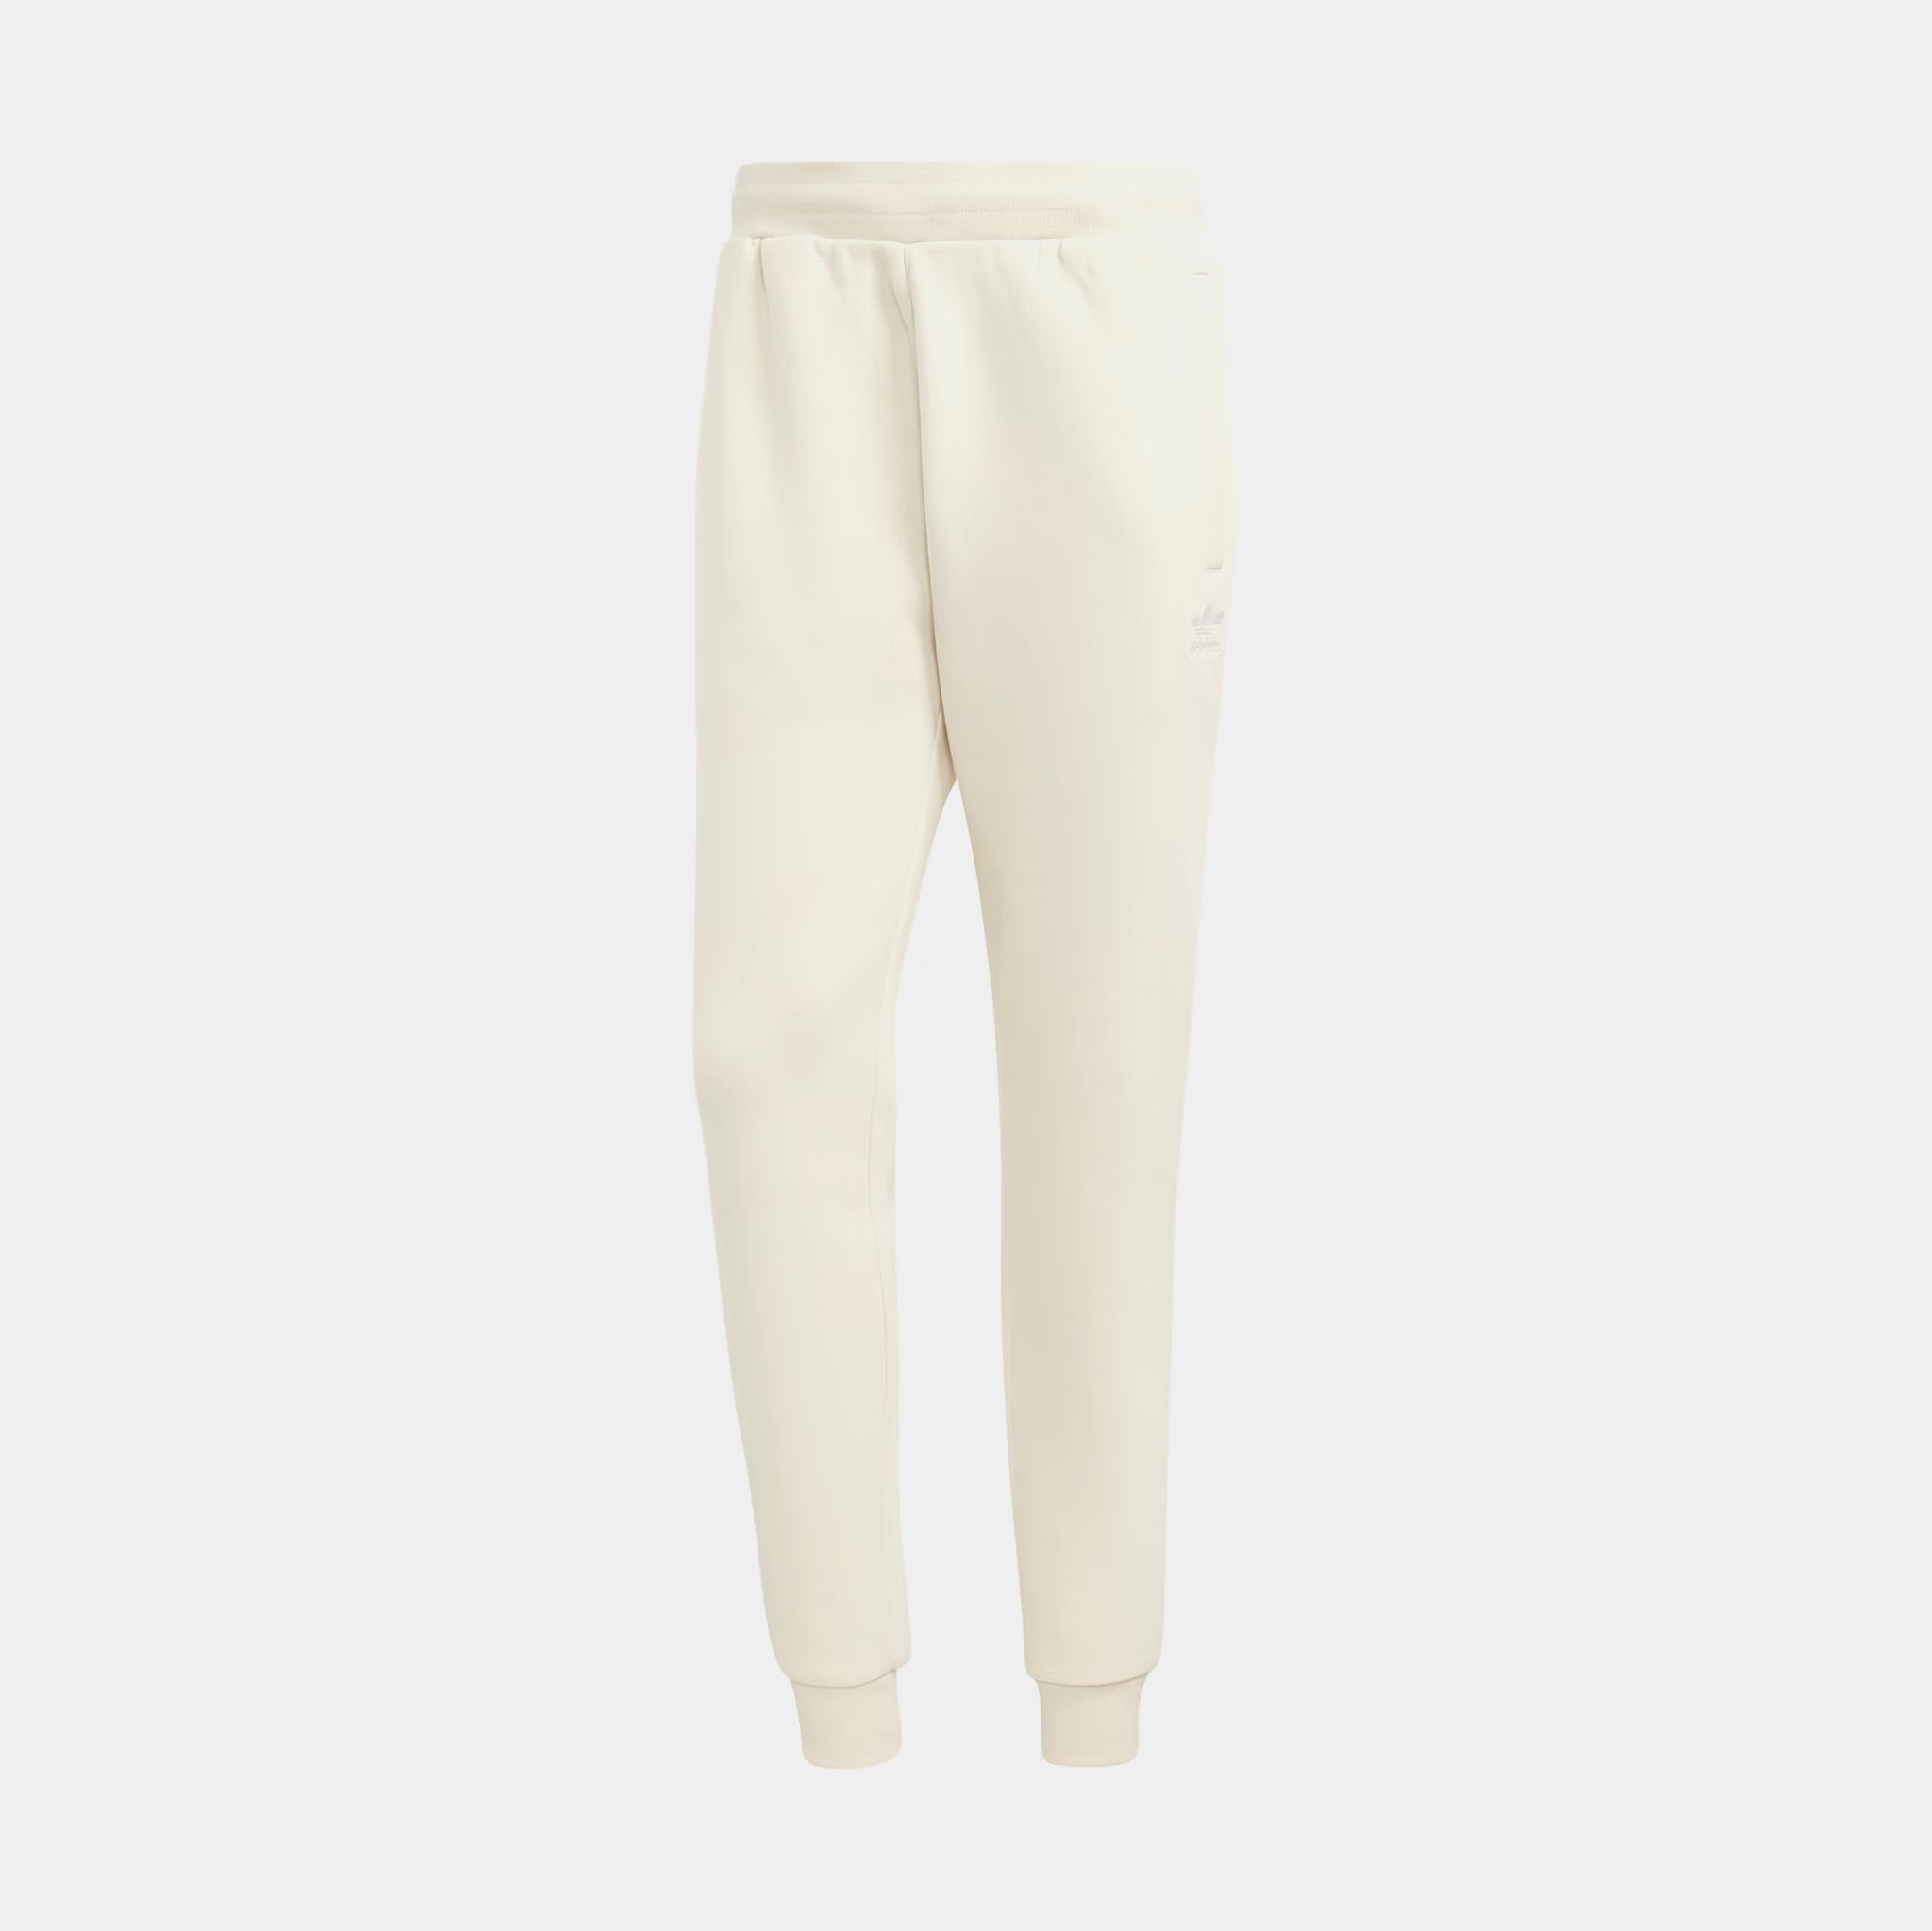 adidas Originals Adicolor Trefoil Sweatpants / Wonder White – size? Canada